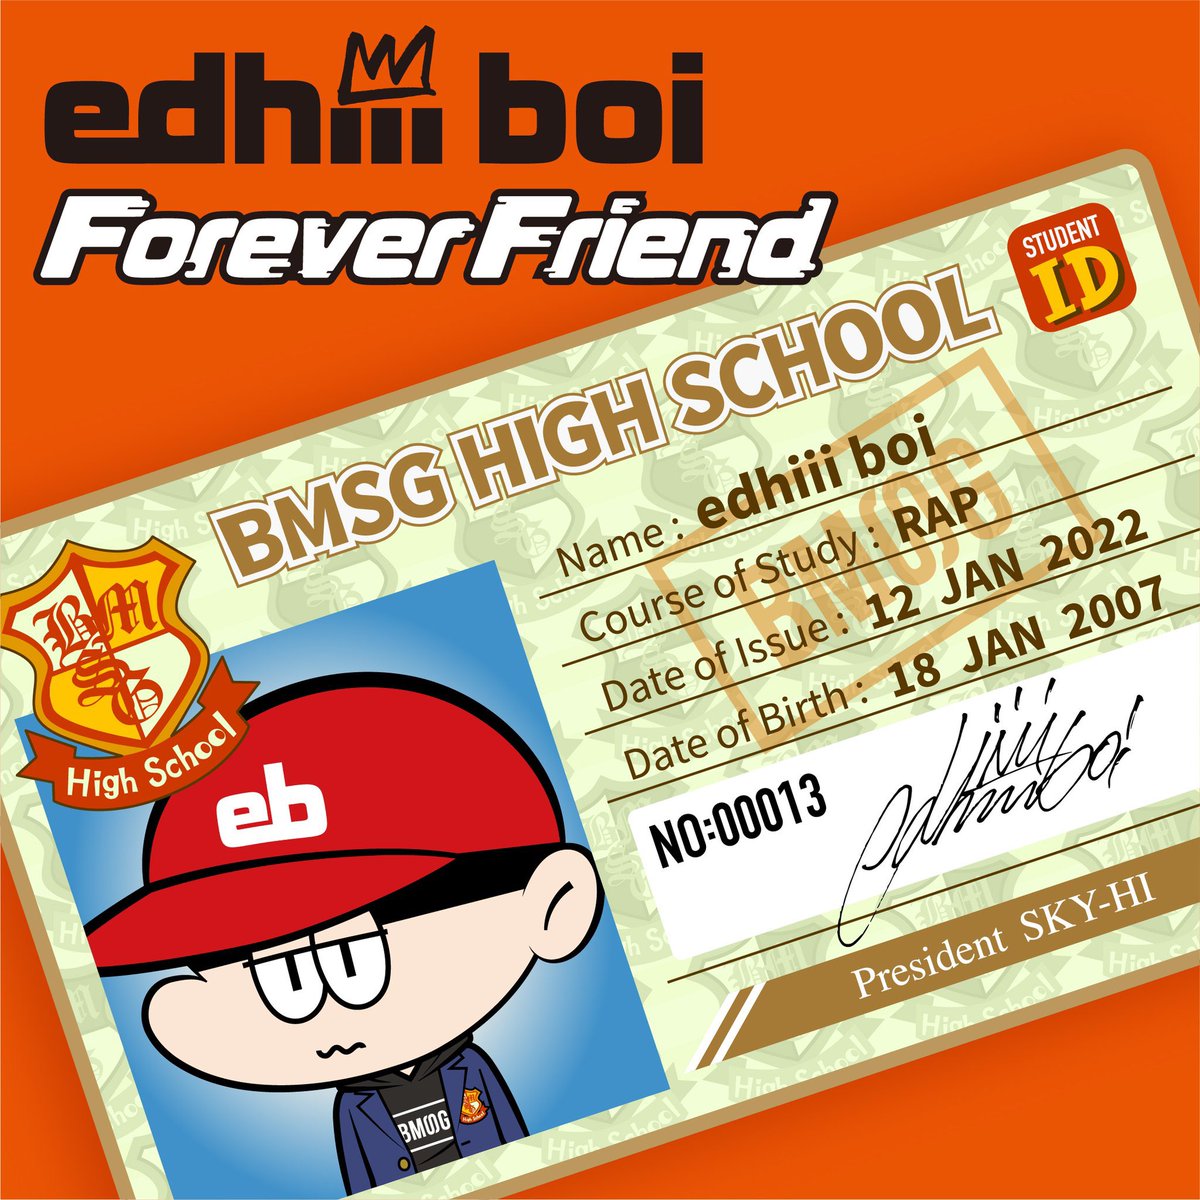 『edhiii boi - Forever Friend』収録の『Forever Friend』ジャケット